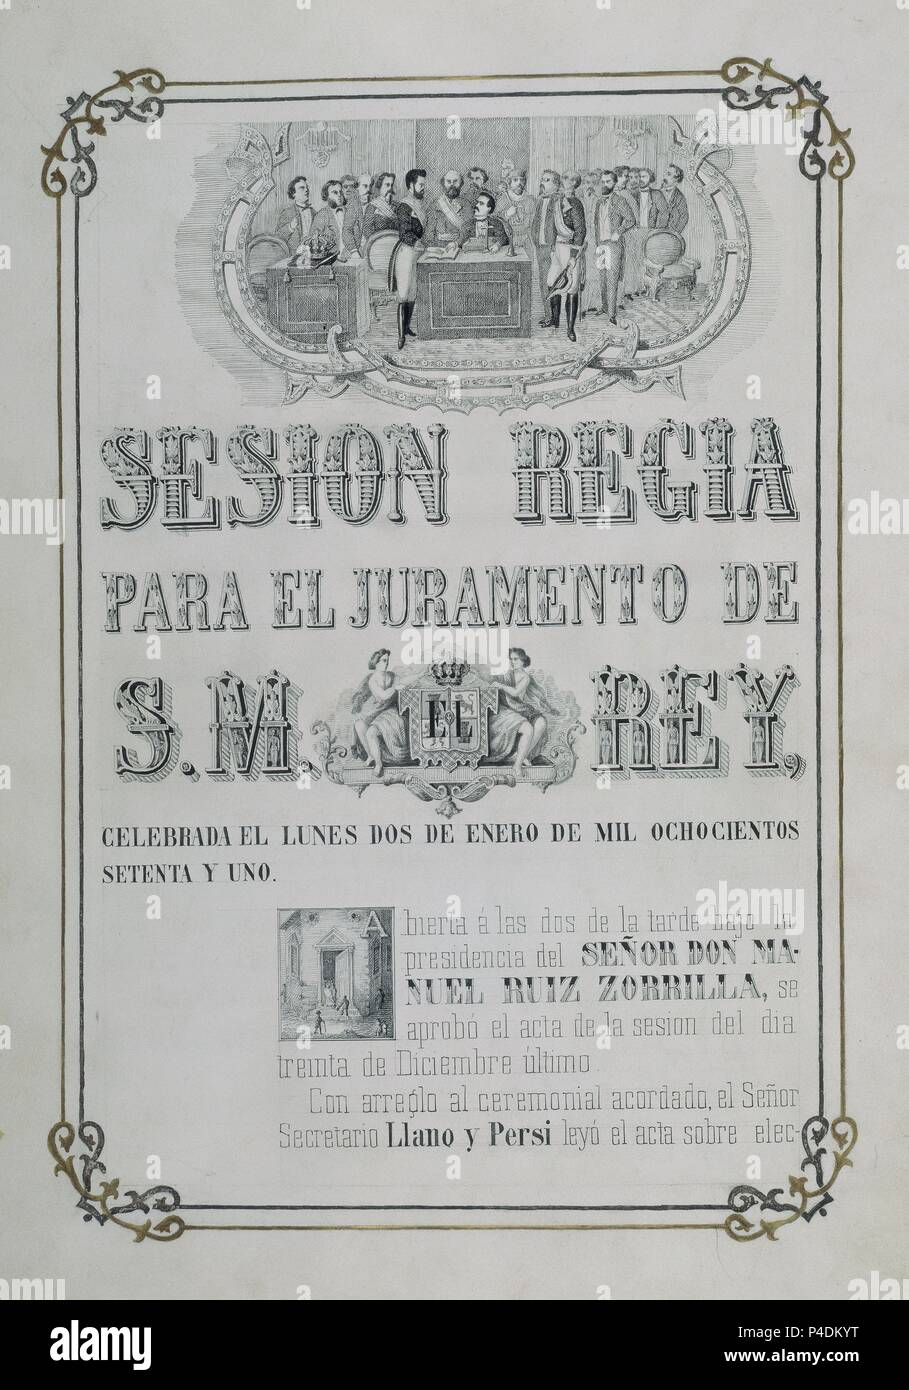 PORTADA - SESION REGIA PARA EL JURAMENTO DE AMADEO I EL 2 DE ENERO DE 1871 - CALIGRAFIADO CON DIBUJOS A PLUMA. Location: CONGRESO DE LOS DIPUTADOS-BIBLIOTECA, MADRID. Stock Photo